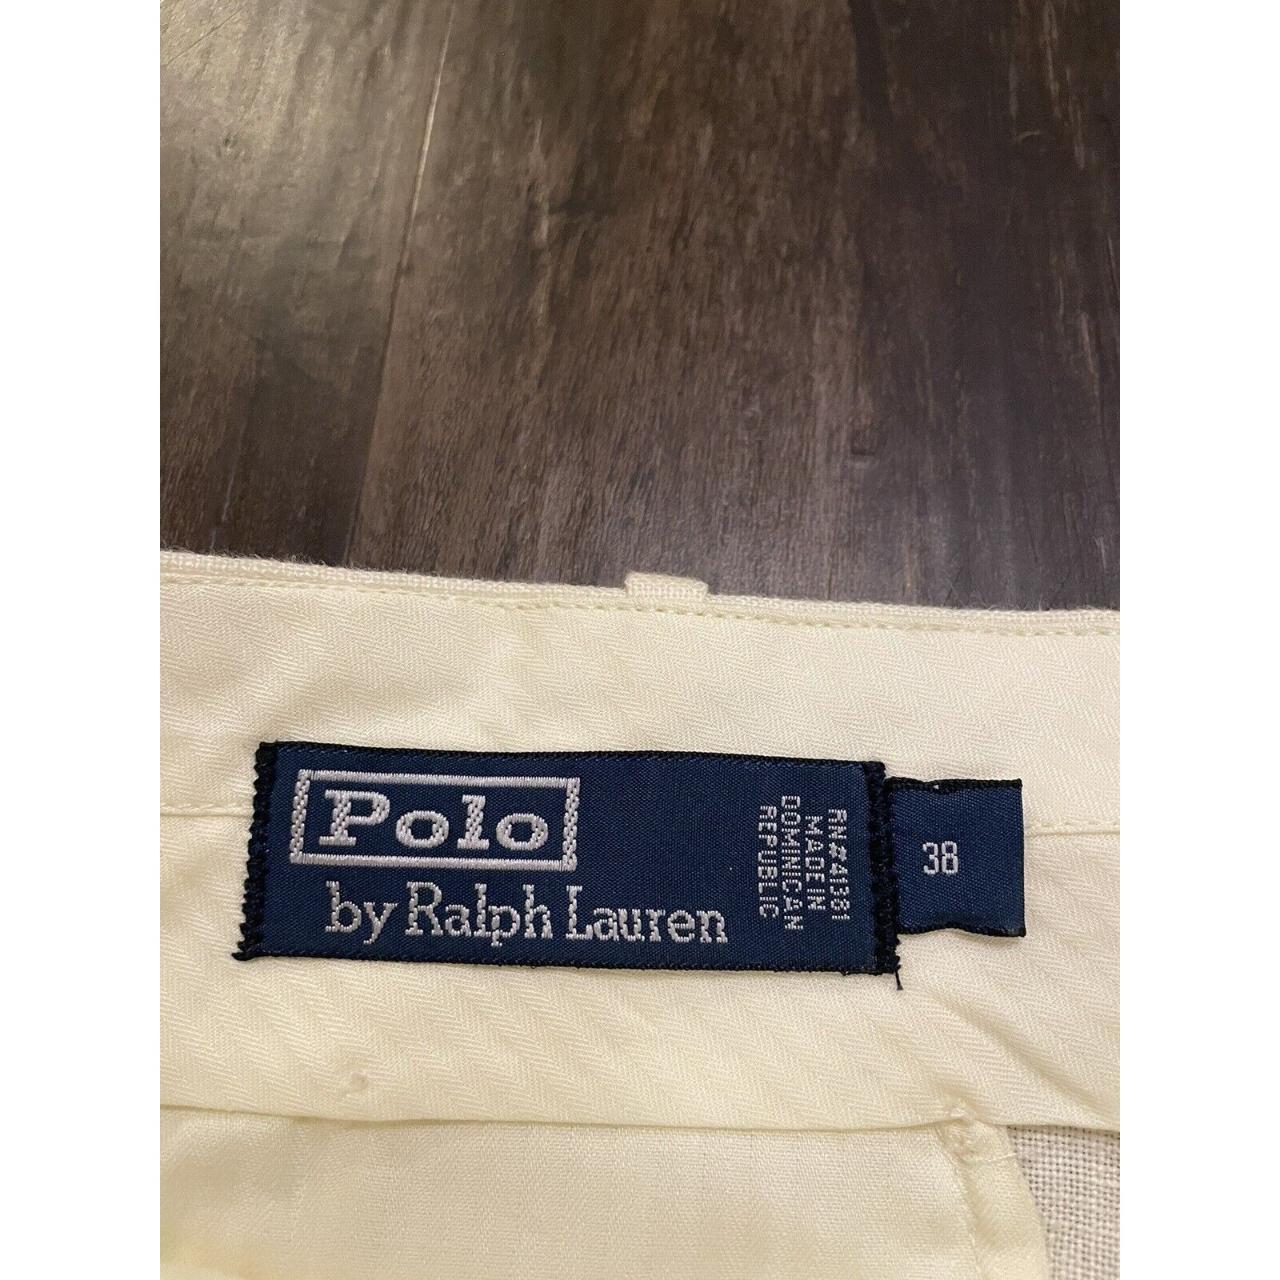 NWT Polo Ralph Lauren Cream Color 100% Linen casual... - Depop